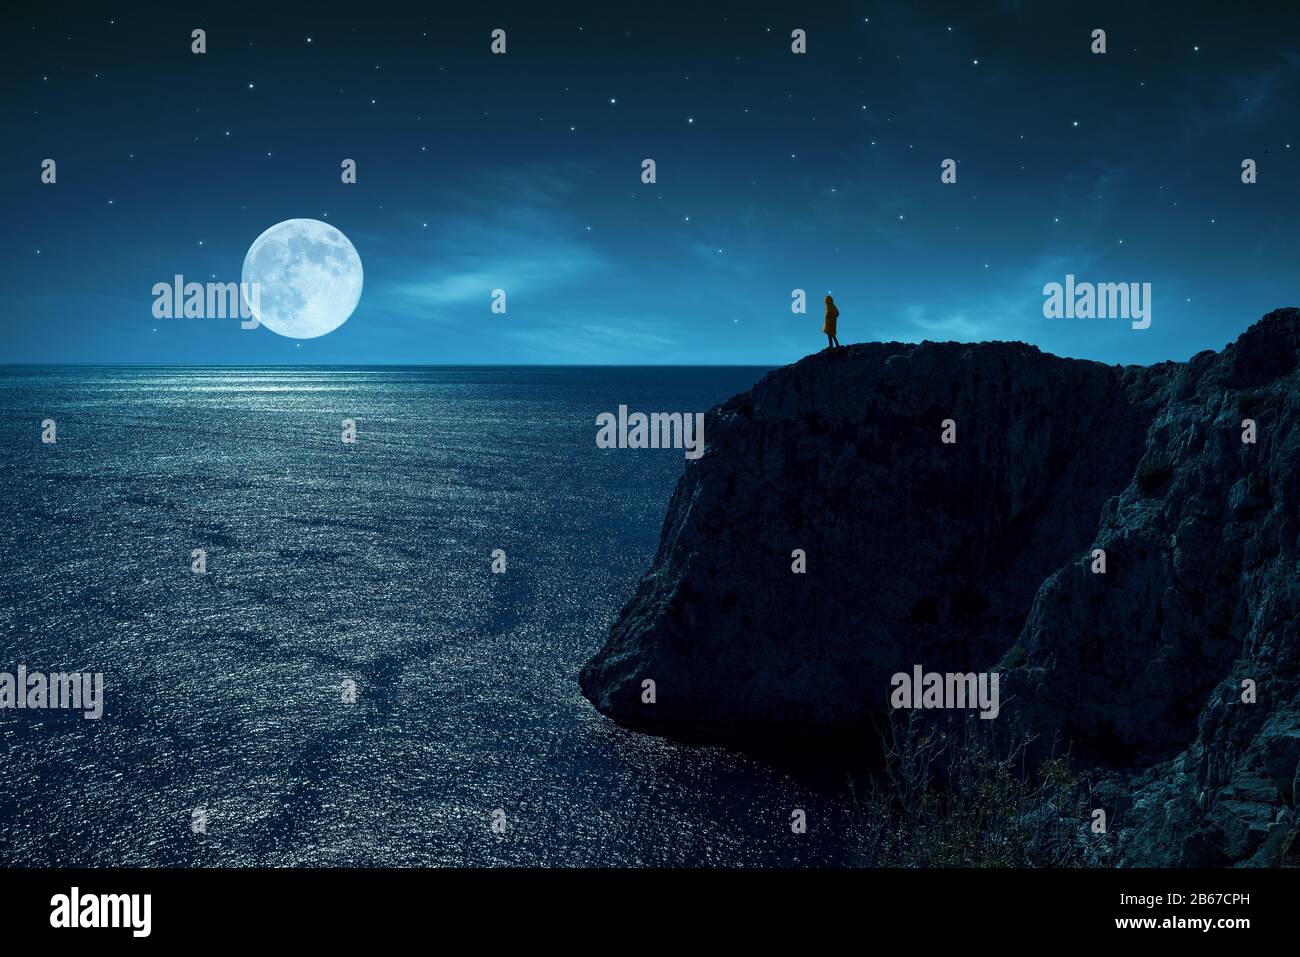 La personne se tient au bord d'une falaise contre la mer et la pleine lune, sous les étoiles et la lumière de lune Banque D'Images